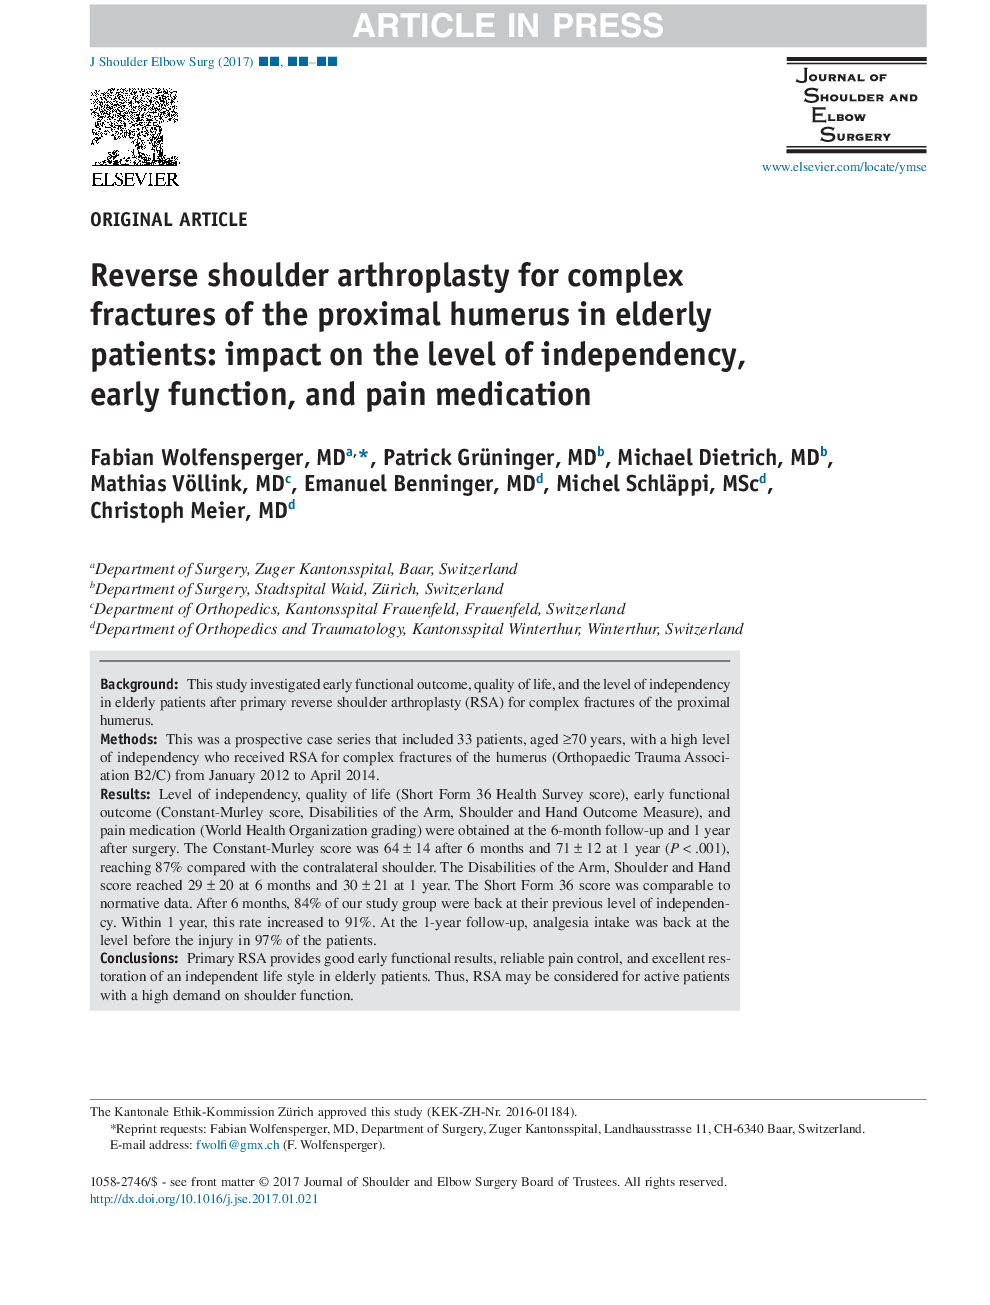 آرتروپلاستی شانه ای معکوس برای شکستگی های پیچیده برون دهلیزی پروگزیمال در سالمندان: تأثیر بر روی سطح استقلال، عملکرد اولیه و داروهای درد 